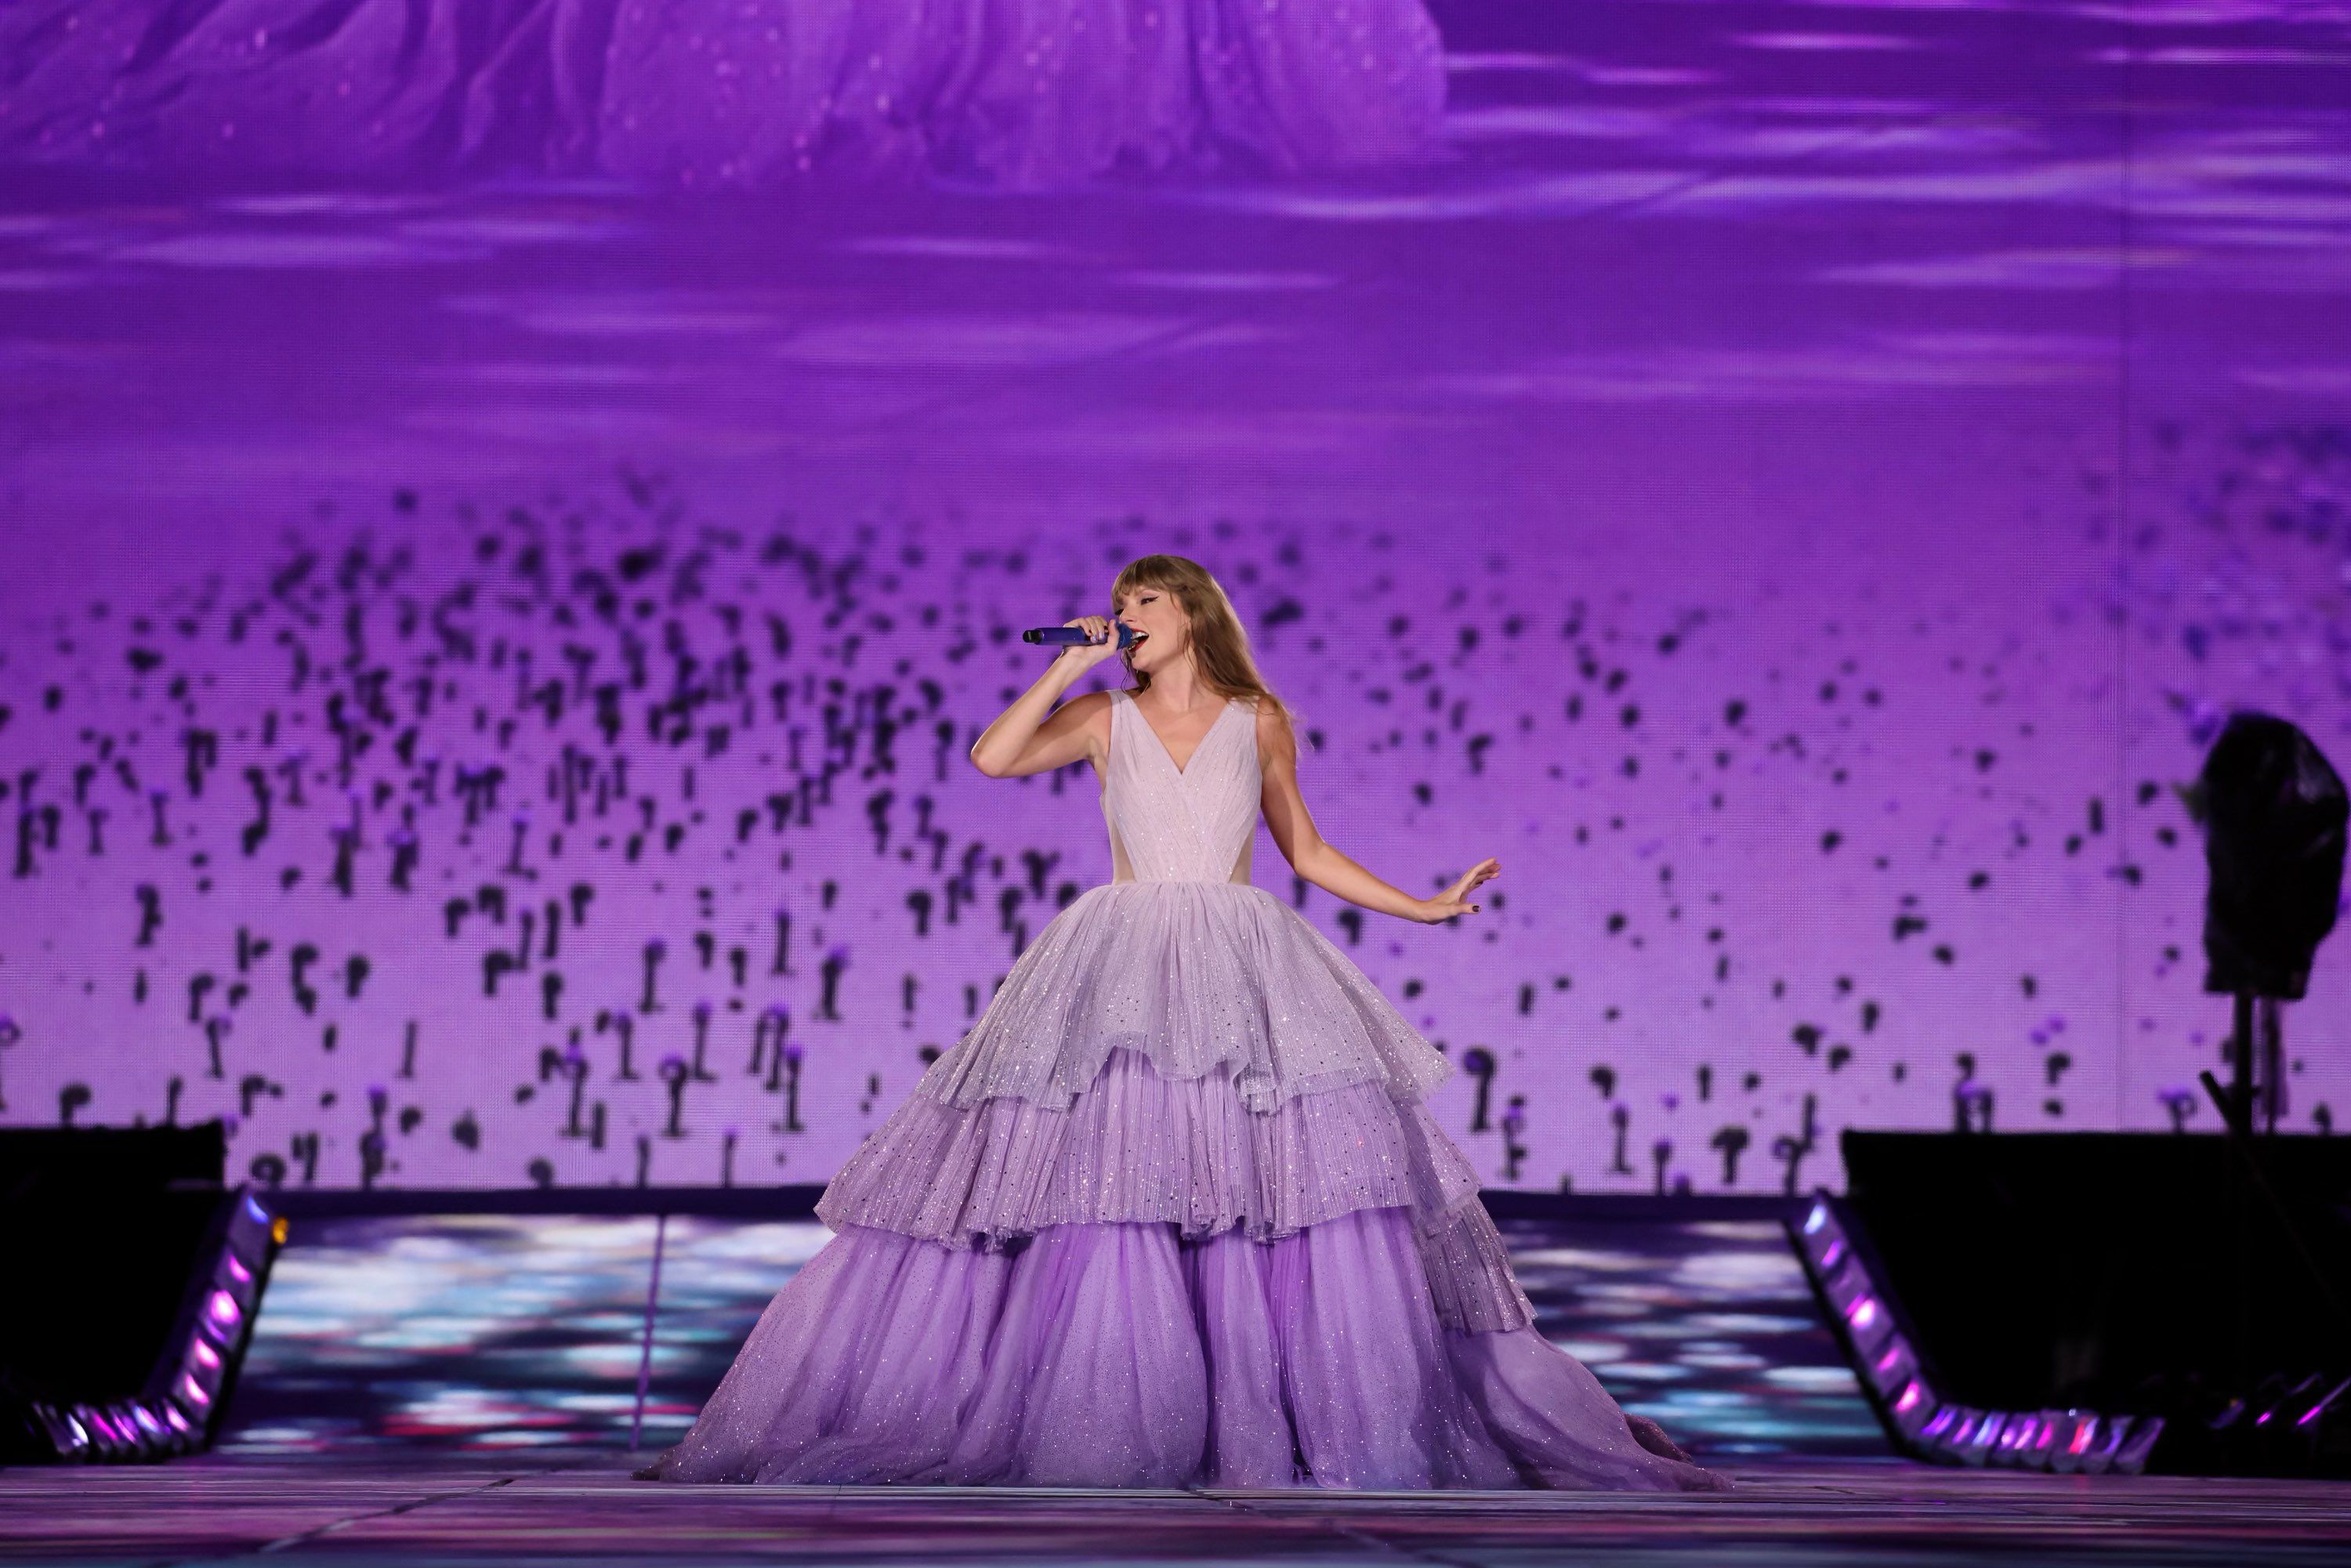 Yêu cầu khắt khe của Taylor Swift khi đến biểu diễn tại các quốc gia - 2